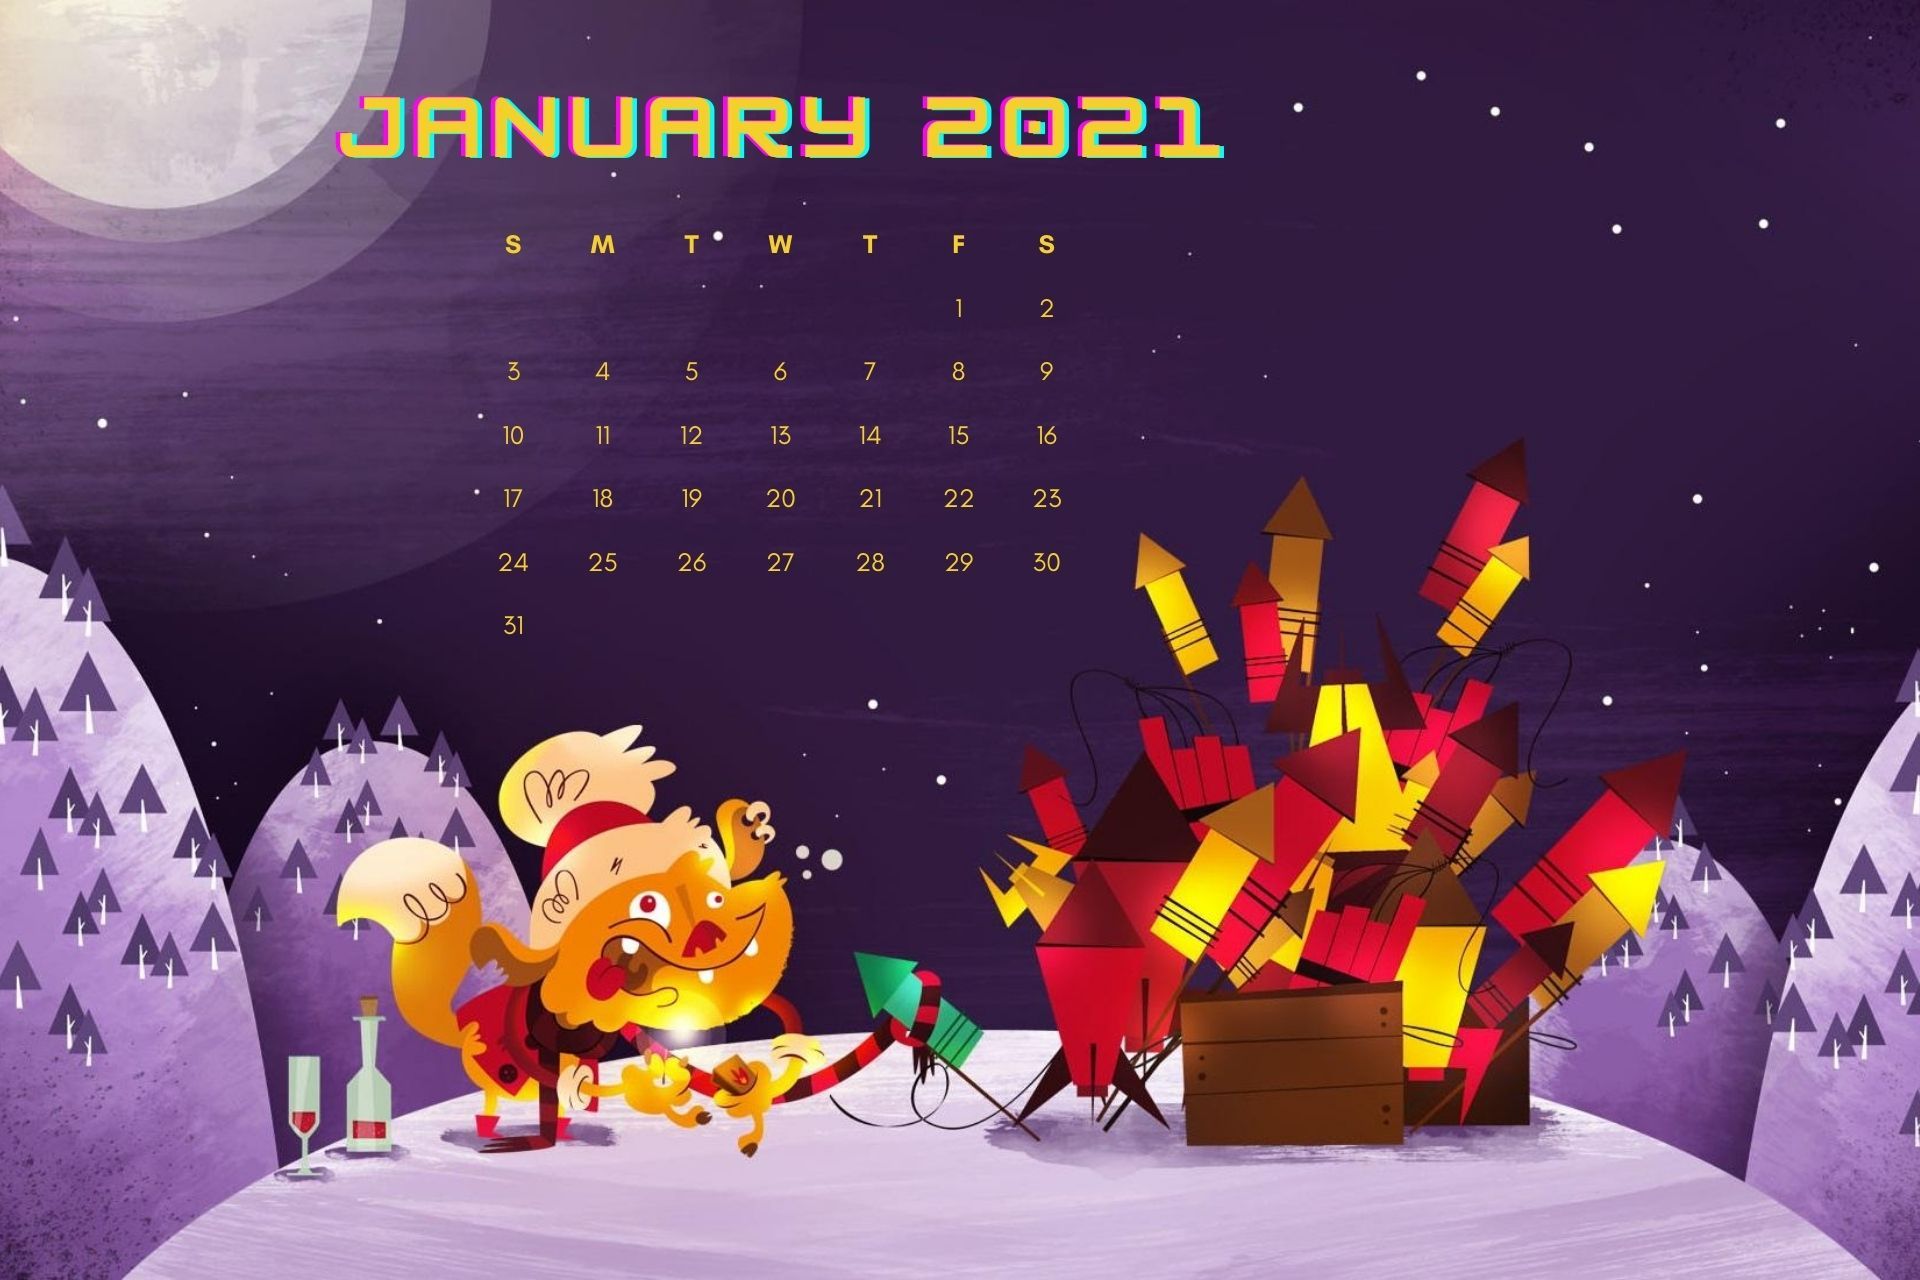 January 2021 Calendar Wallpaper Free Download